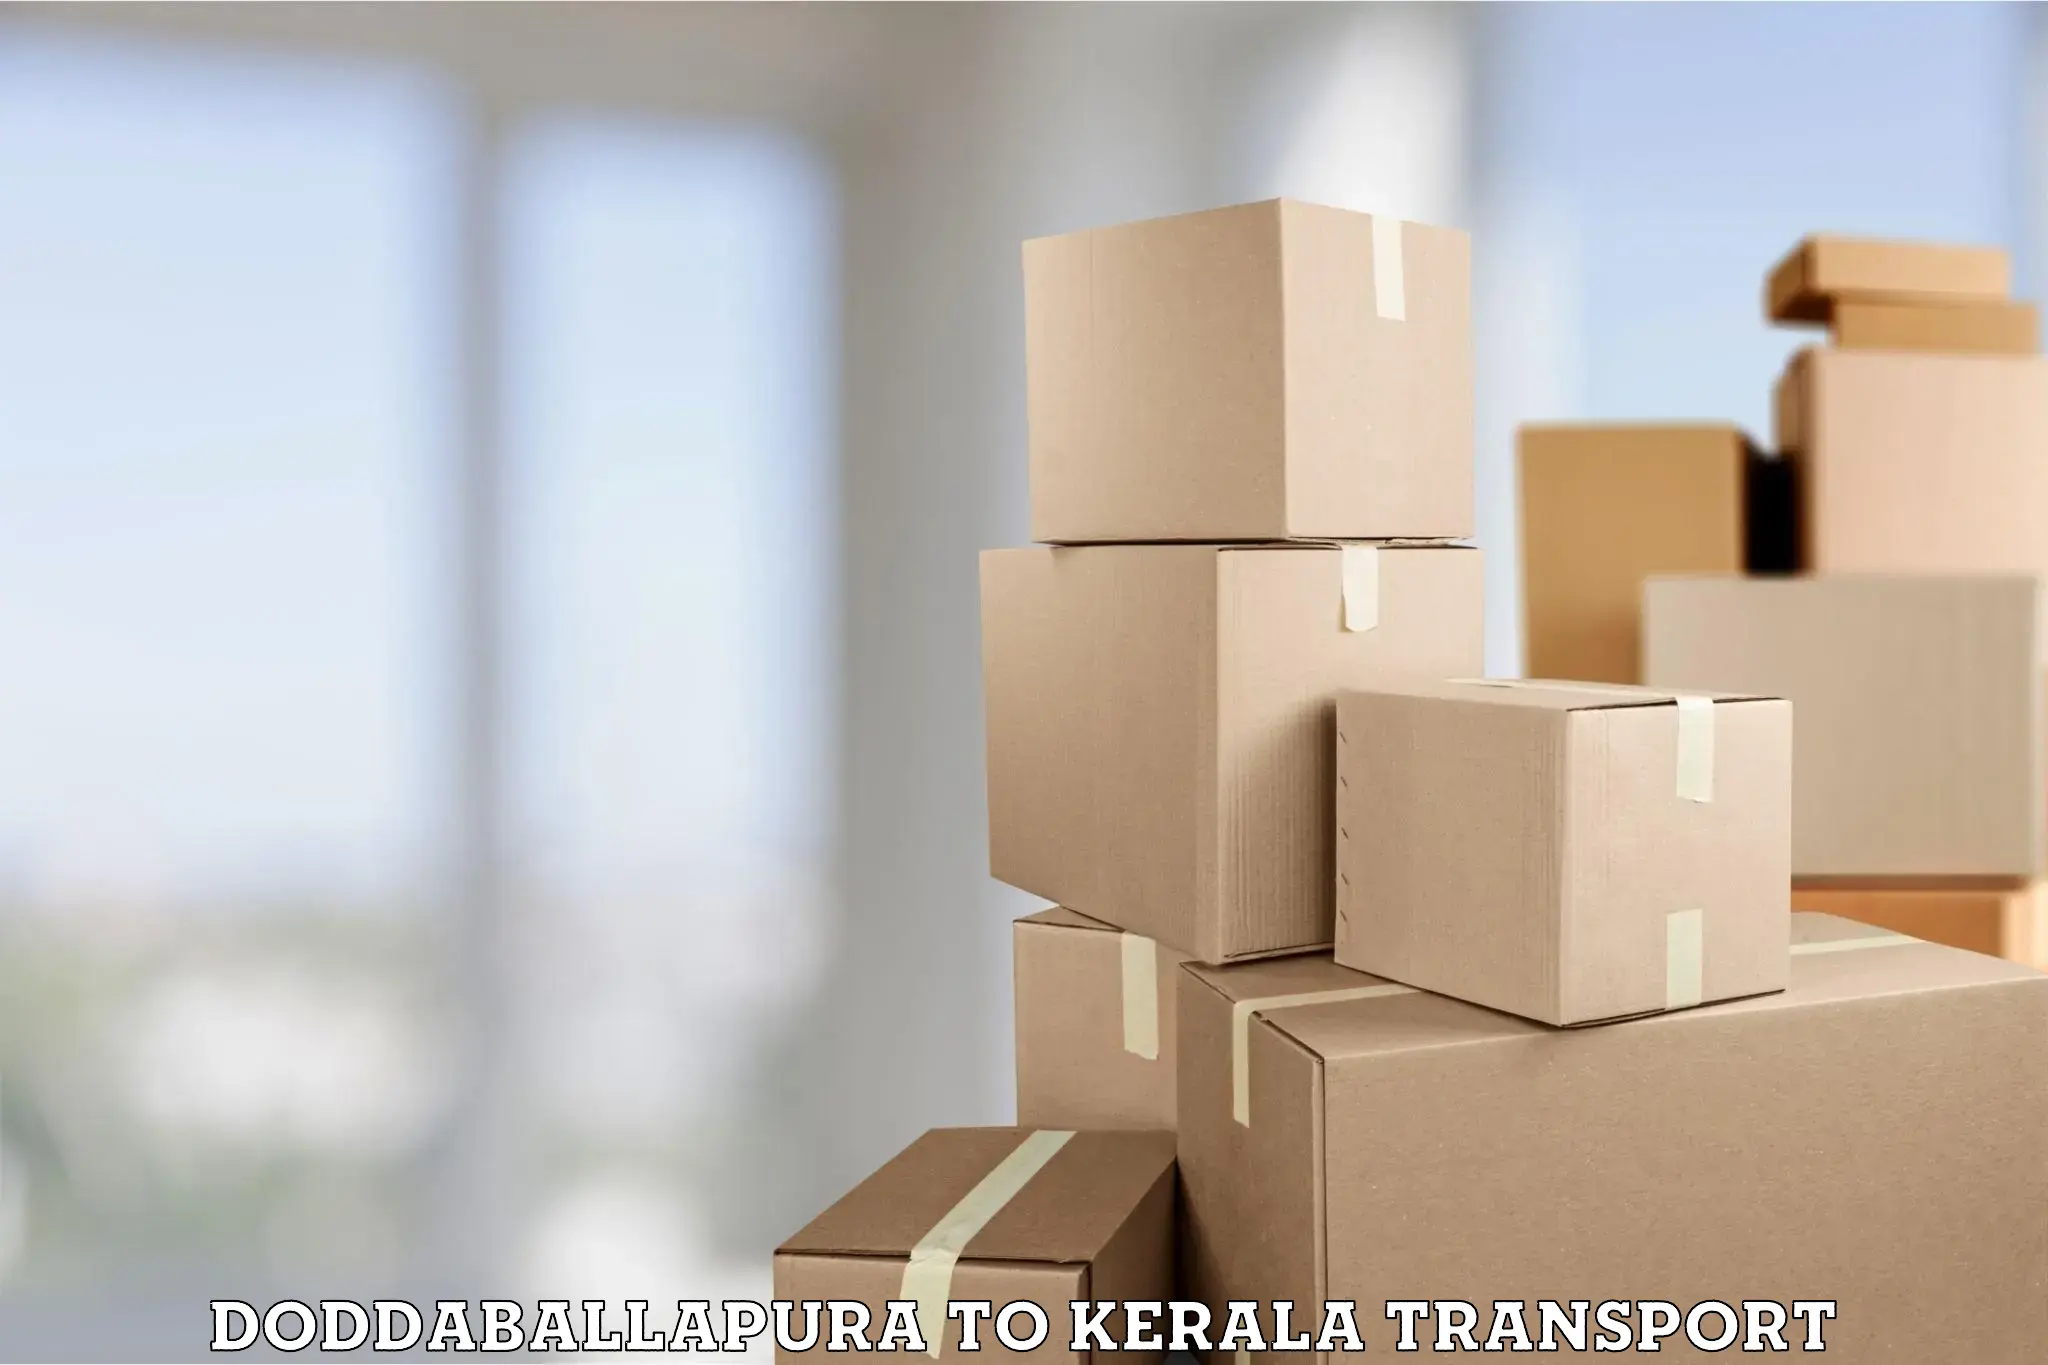 Nearest transport service Doddaballapura to IIIT Kottayam